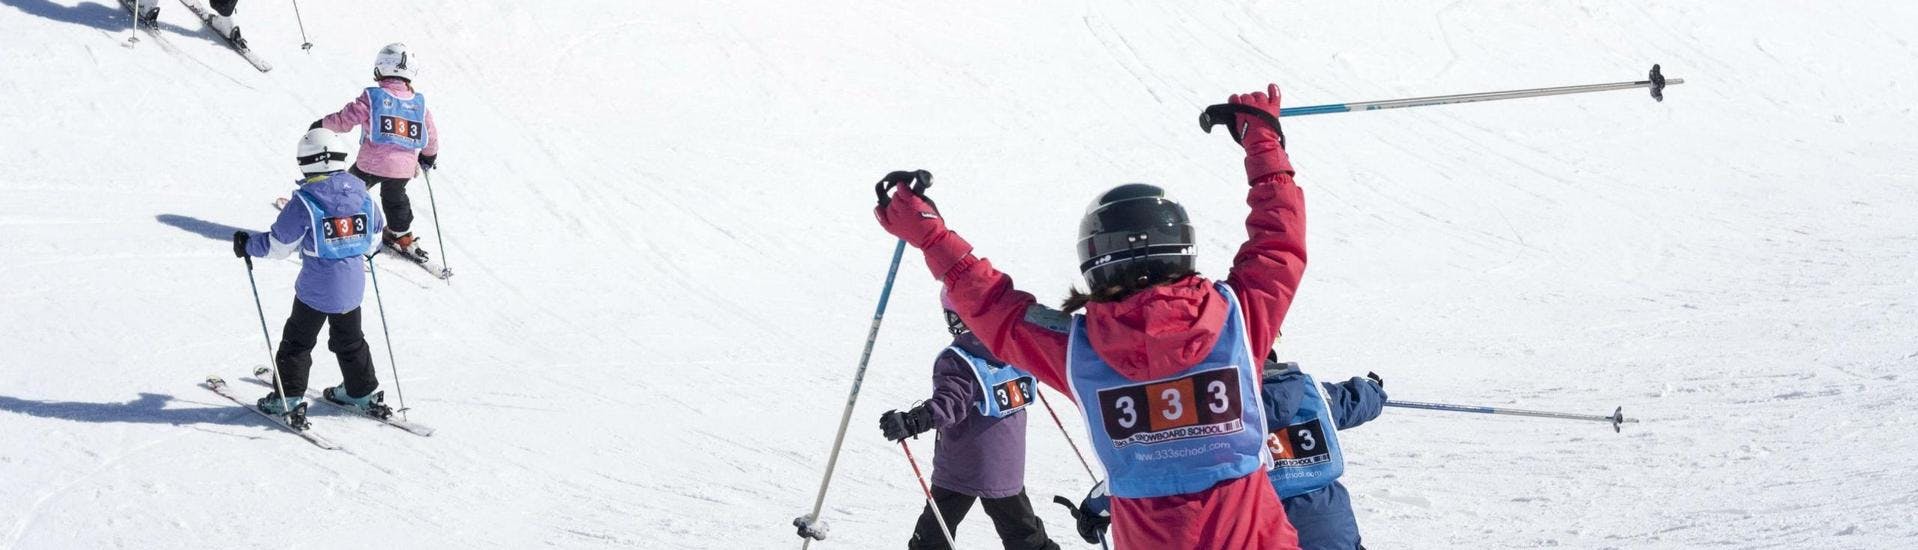 Eine Gruppe von Freunden profitiert von dem maßgeschneiderten Programm des Privat-Skikurses für Kinder - Val d'Isère der Skischule 333.